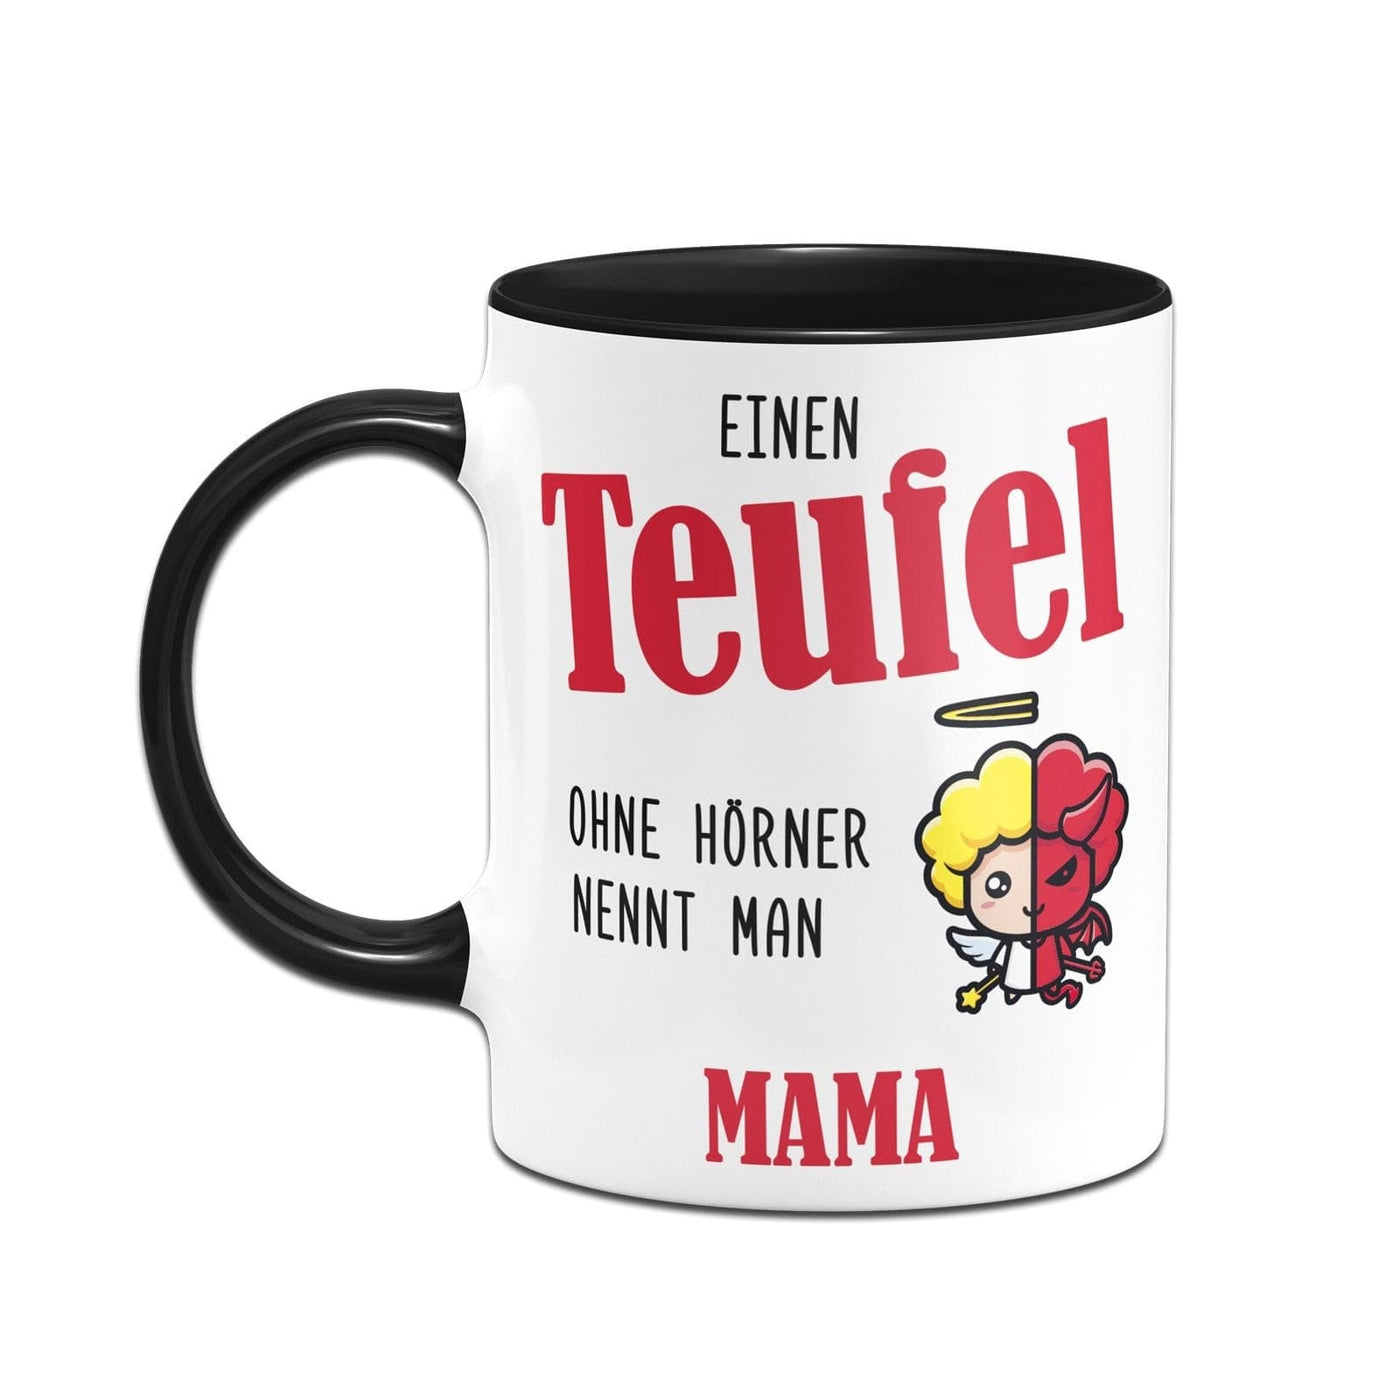 Bild: Tasse - Einen Teufel ohne Hörner nennt man Mama Geschenkidee